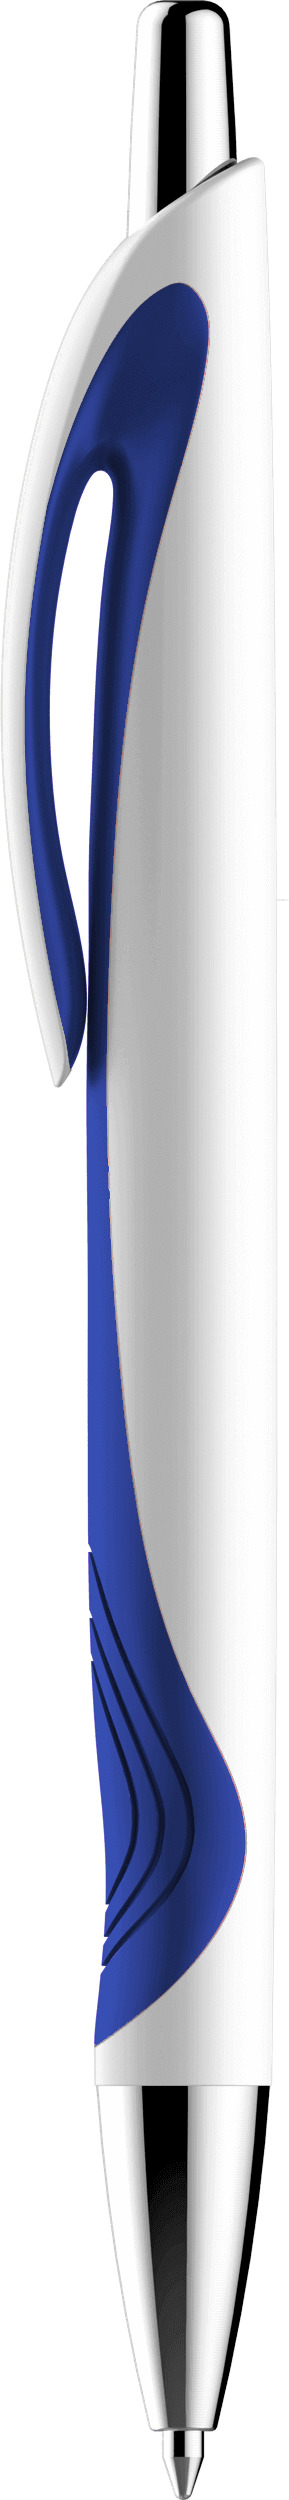 Шариковая ручка Turbo, синяя, вид сбоку